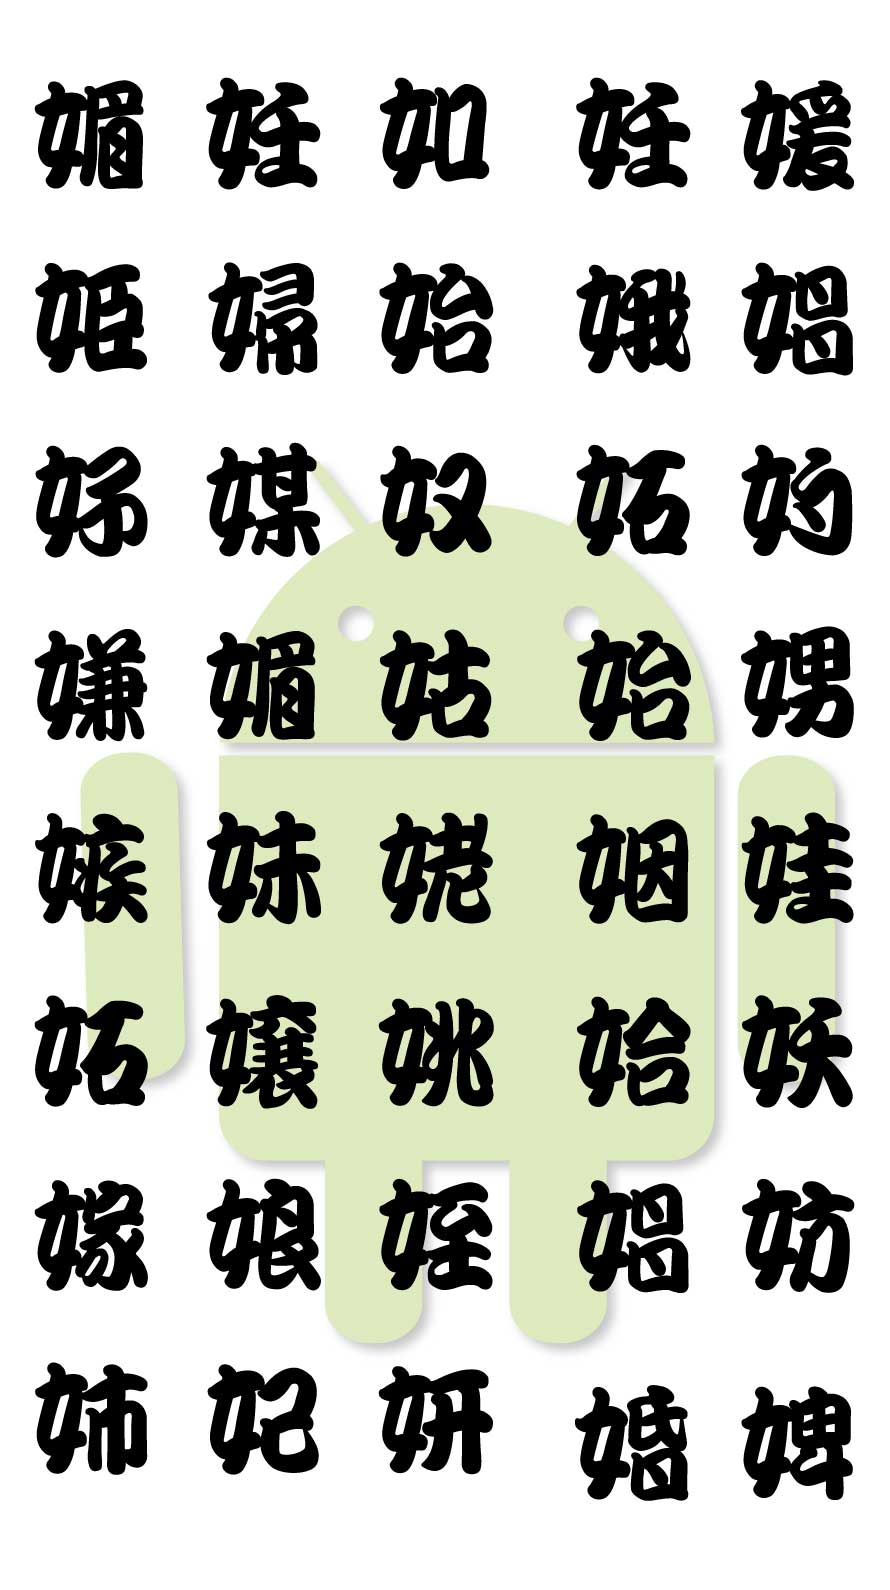 エロ注意 超恥ずかしいジョーク壁紙 魚漢字湯のみ風の隠語漢字の待ち画面 Iphone Android対応 スマホlaboホンテン